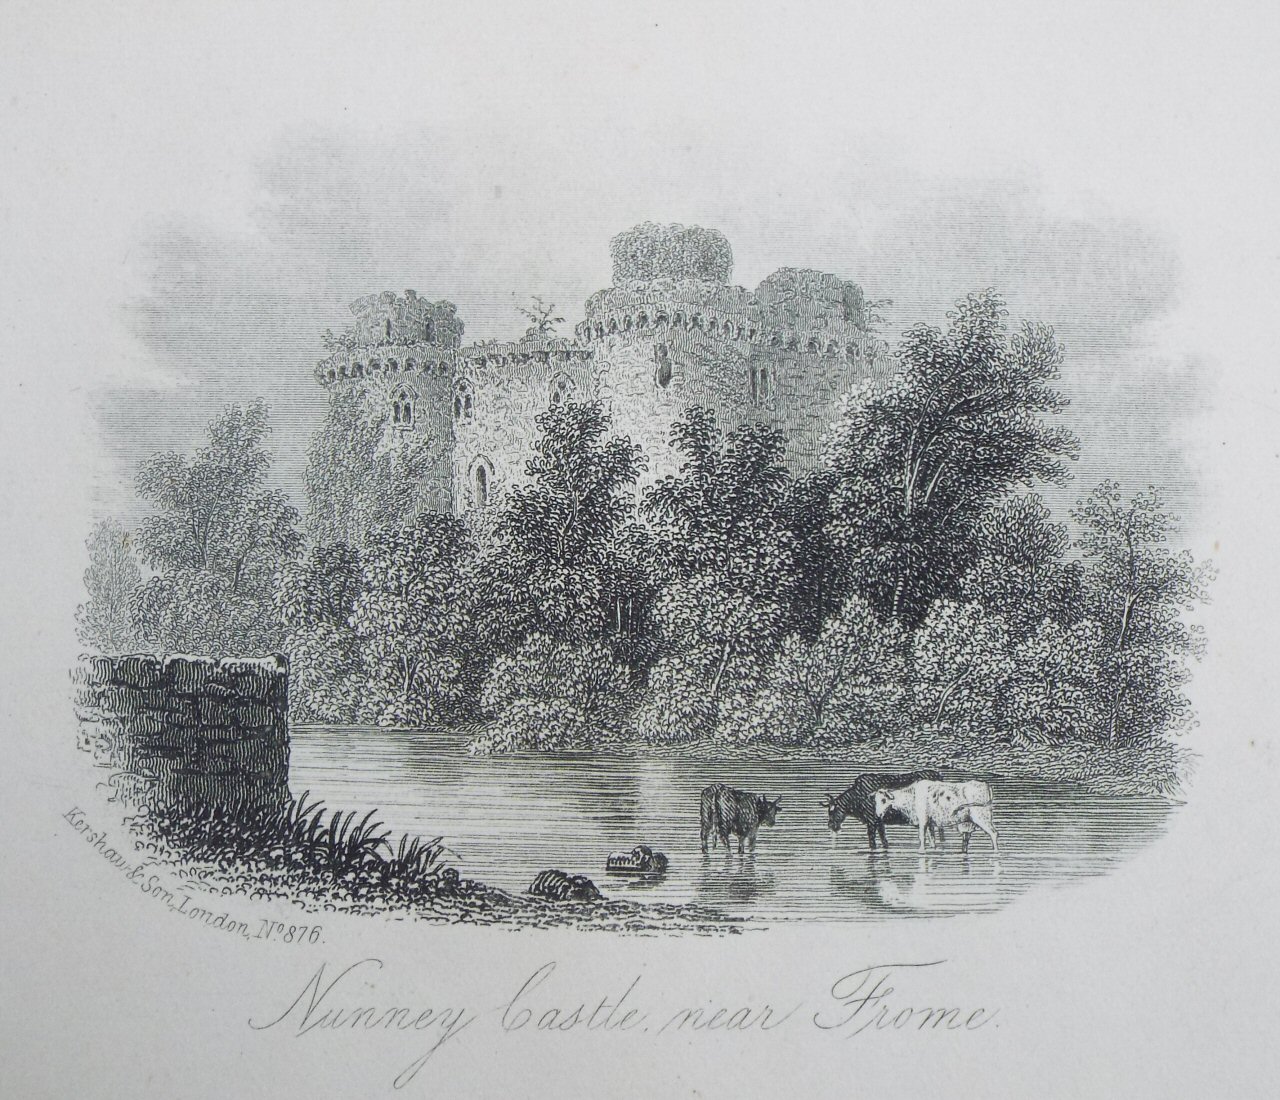 Steel Vignette - Nunney Castle, near Frome - Kershaw